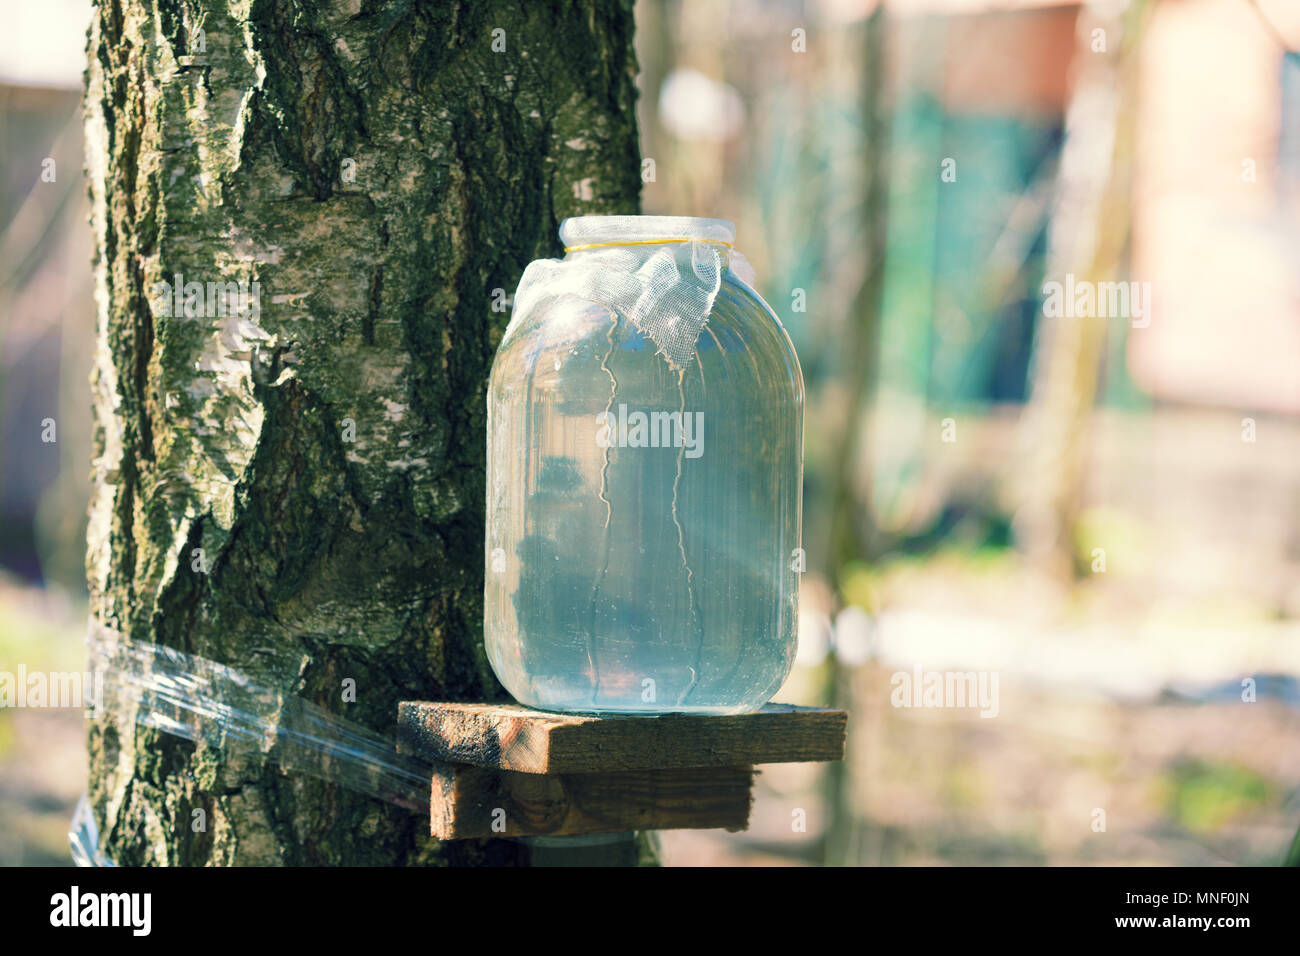 Producción de savia de abedul en tarro de cristal en el bosque. Primavera Foto de stock